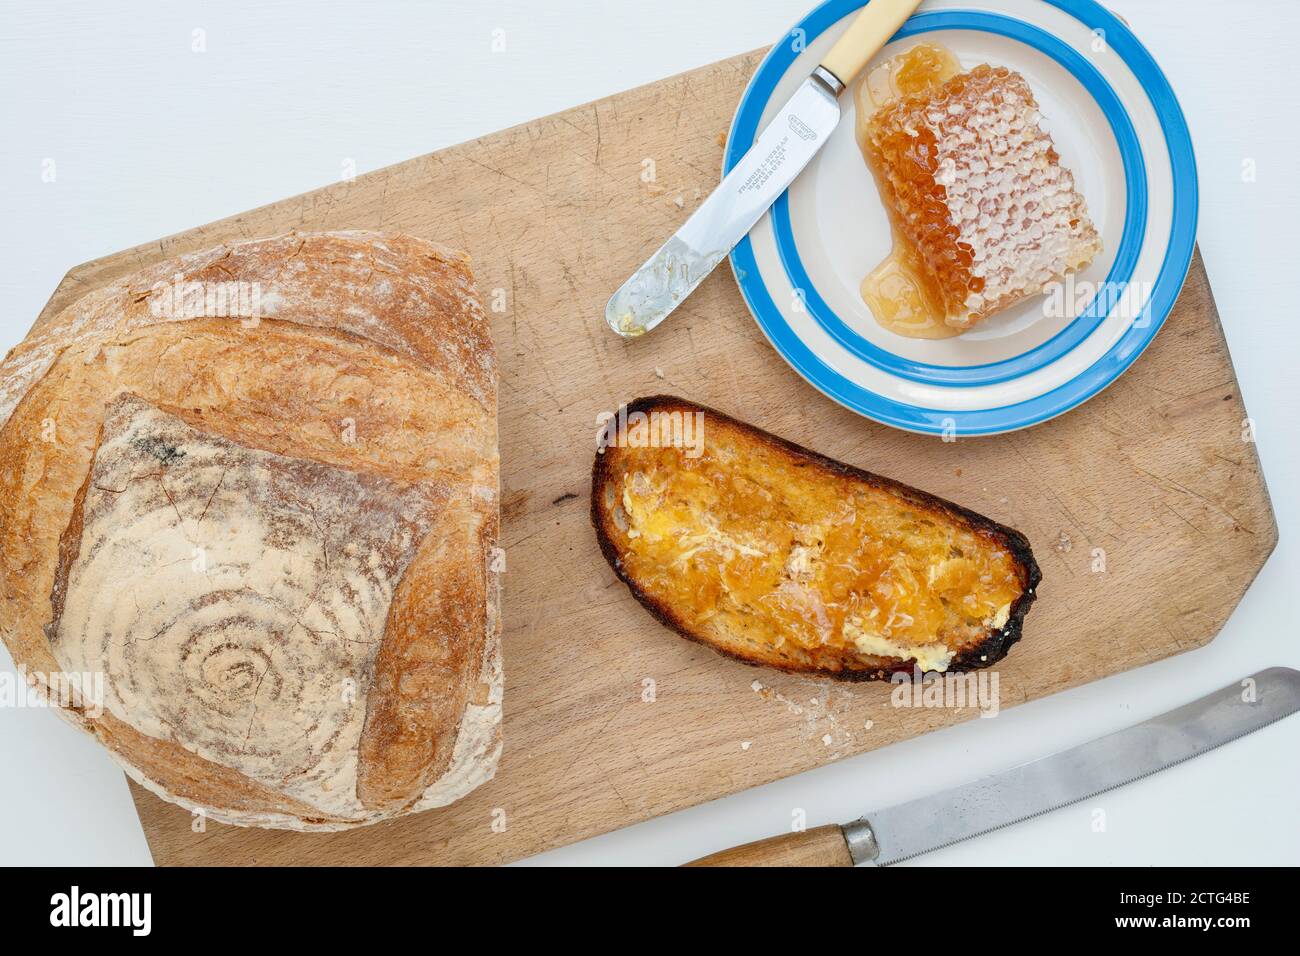 Pain grillé au levain avec nid d'abeille sur une planche à pain. ROYAUME-UNI Banque D'Images